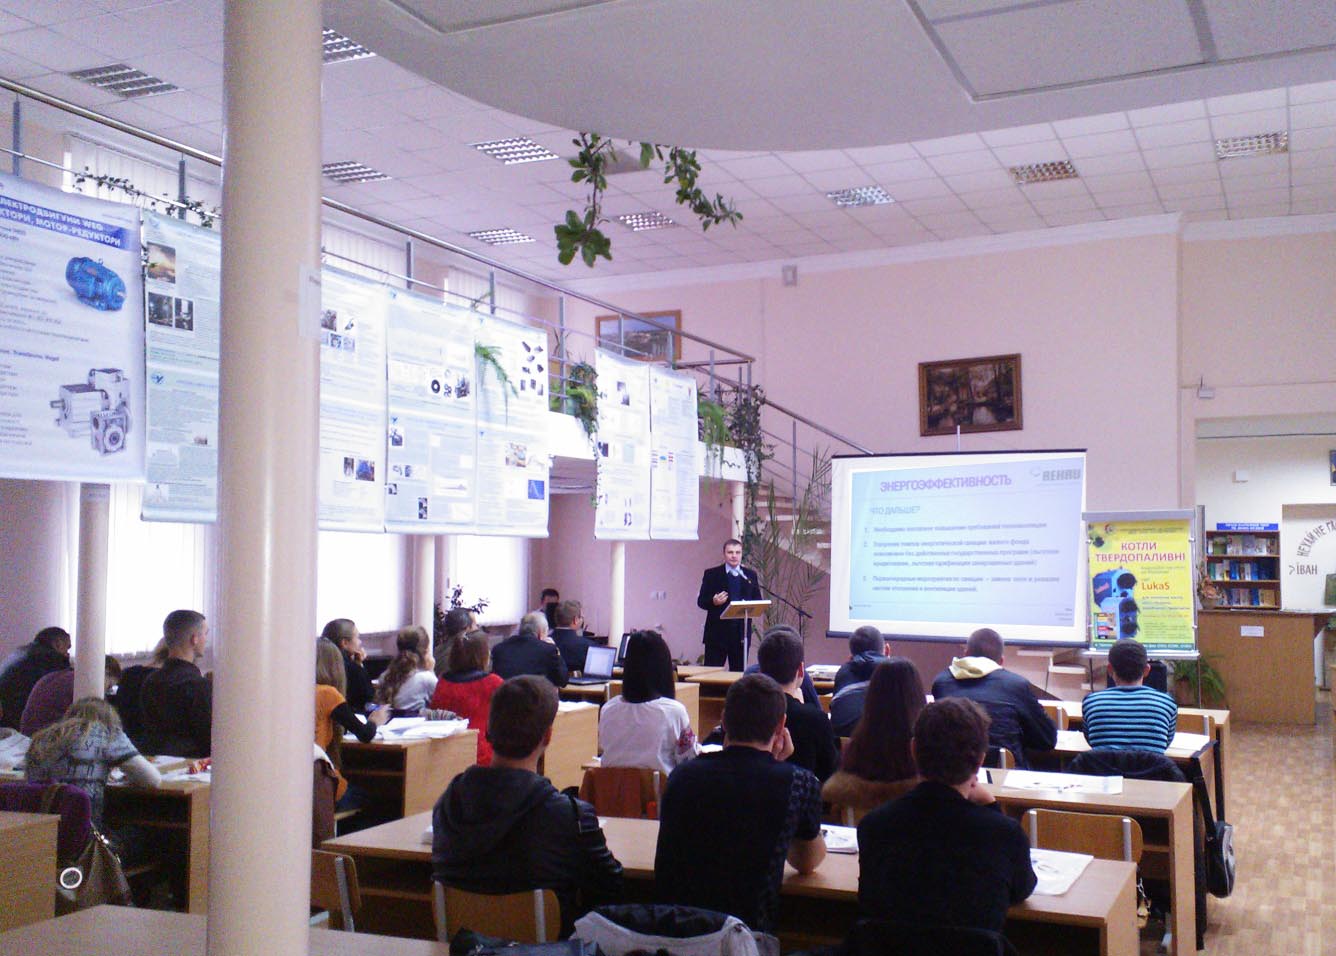  Компания REHAU на научно-практической конференции «Неделя энергосбережения на Тернопольщине 2012» 